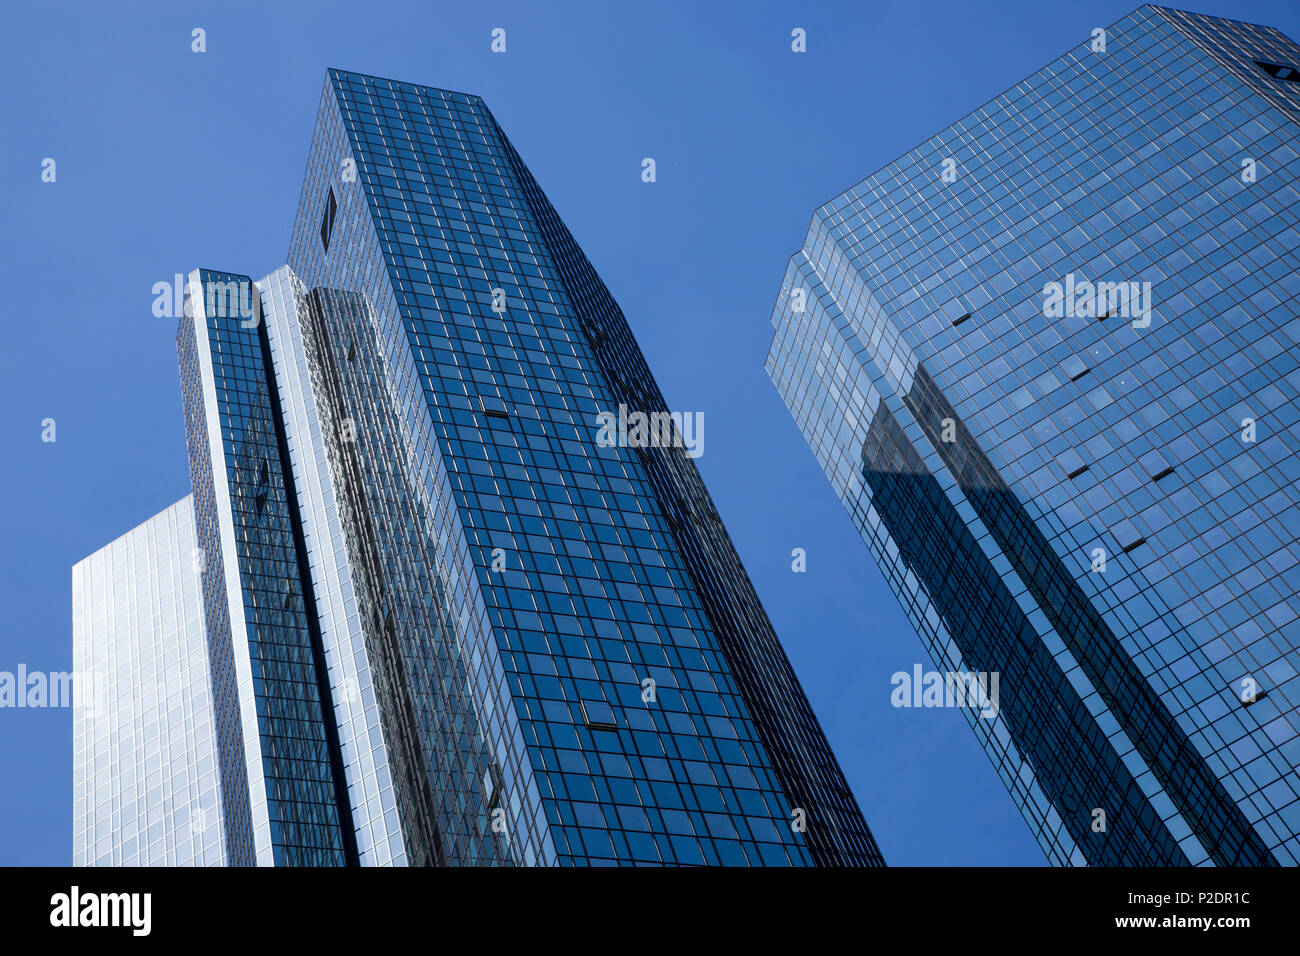 Deutsche Bank skyscraper towers in financial district, Frankfurt am Main, Hessen, Germany, Europe Stock Photo